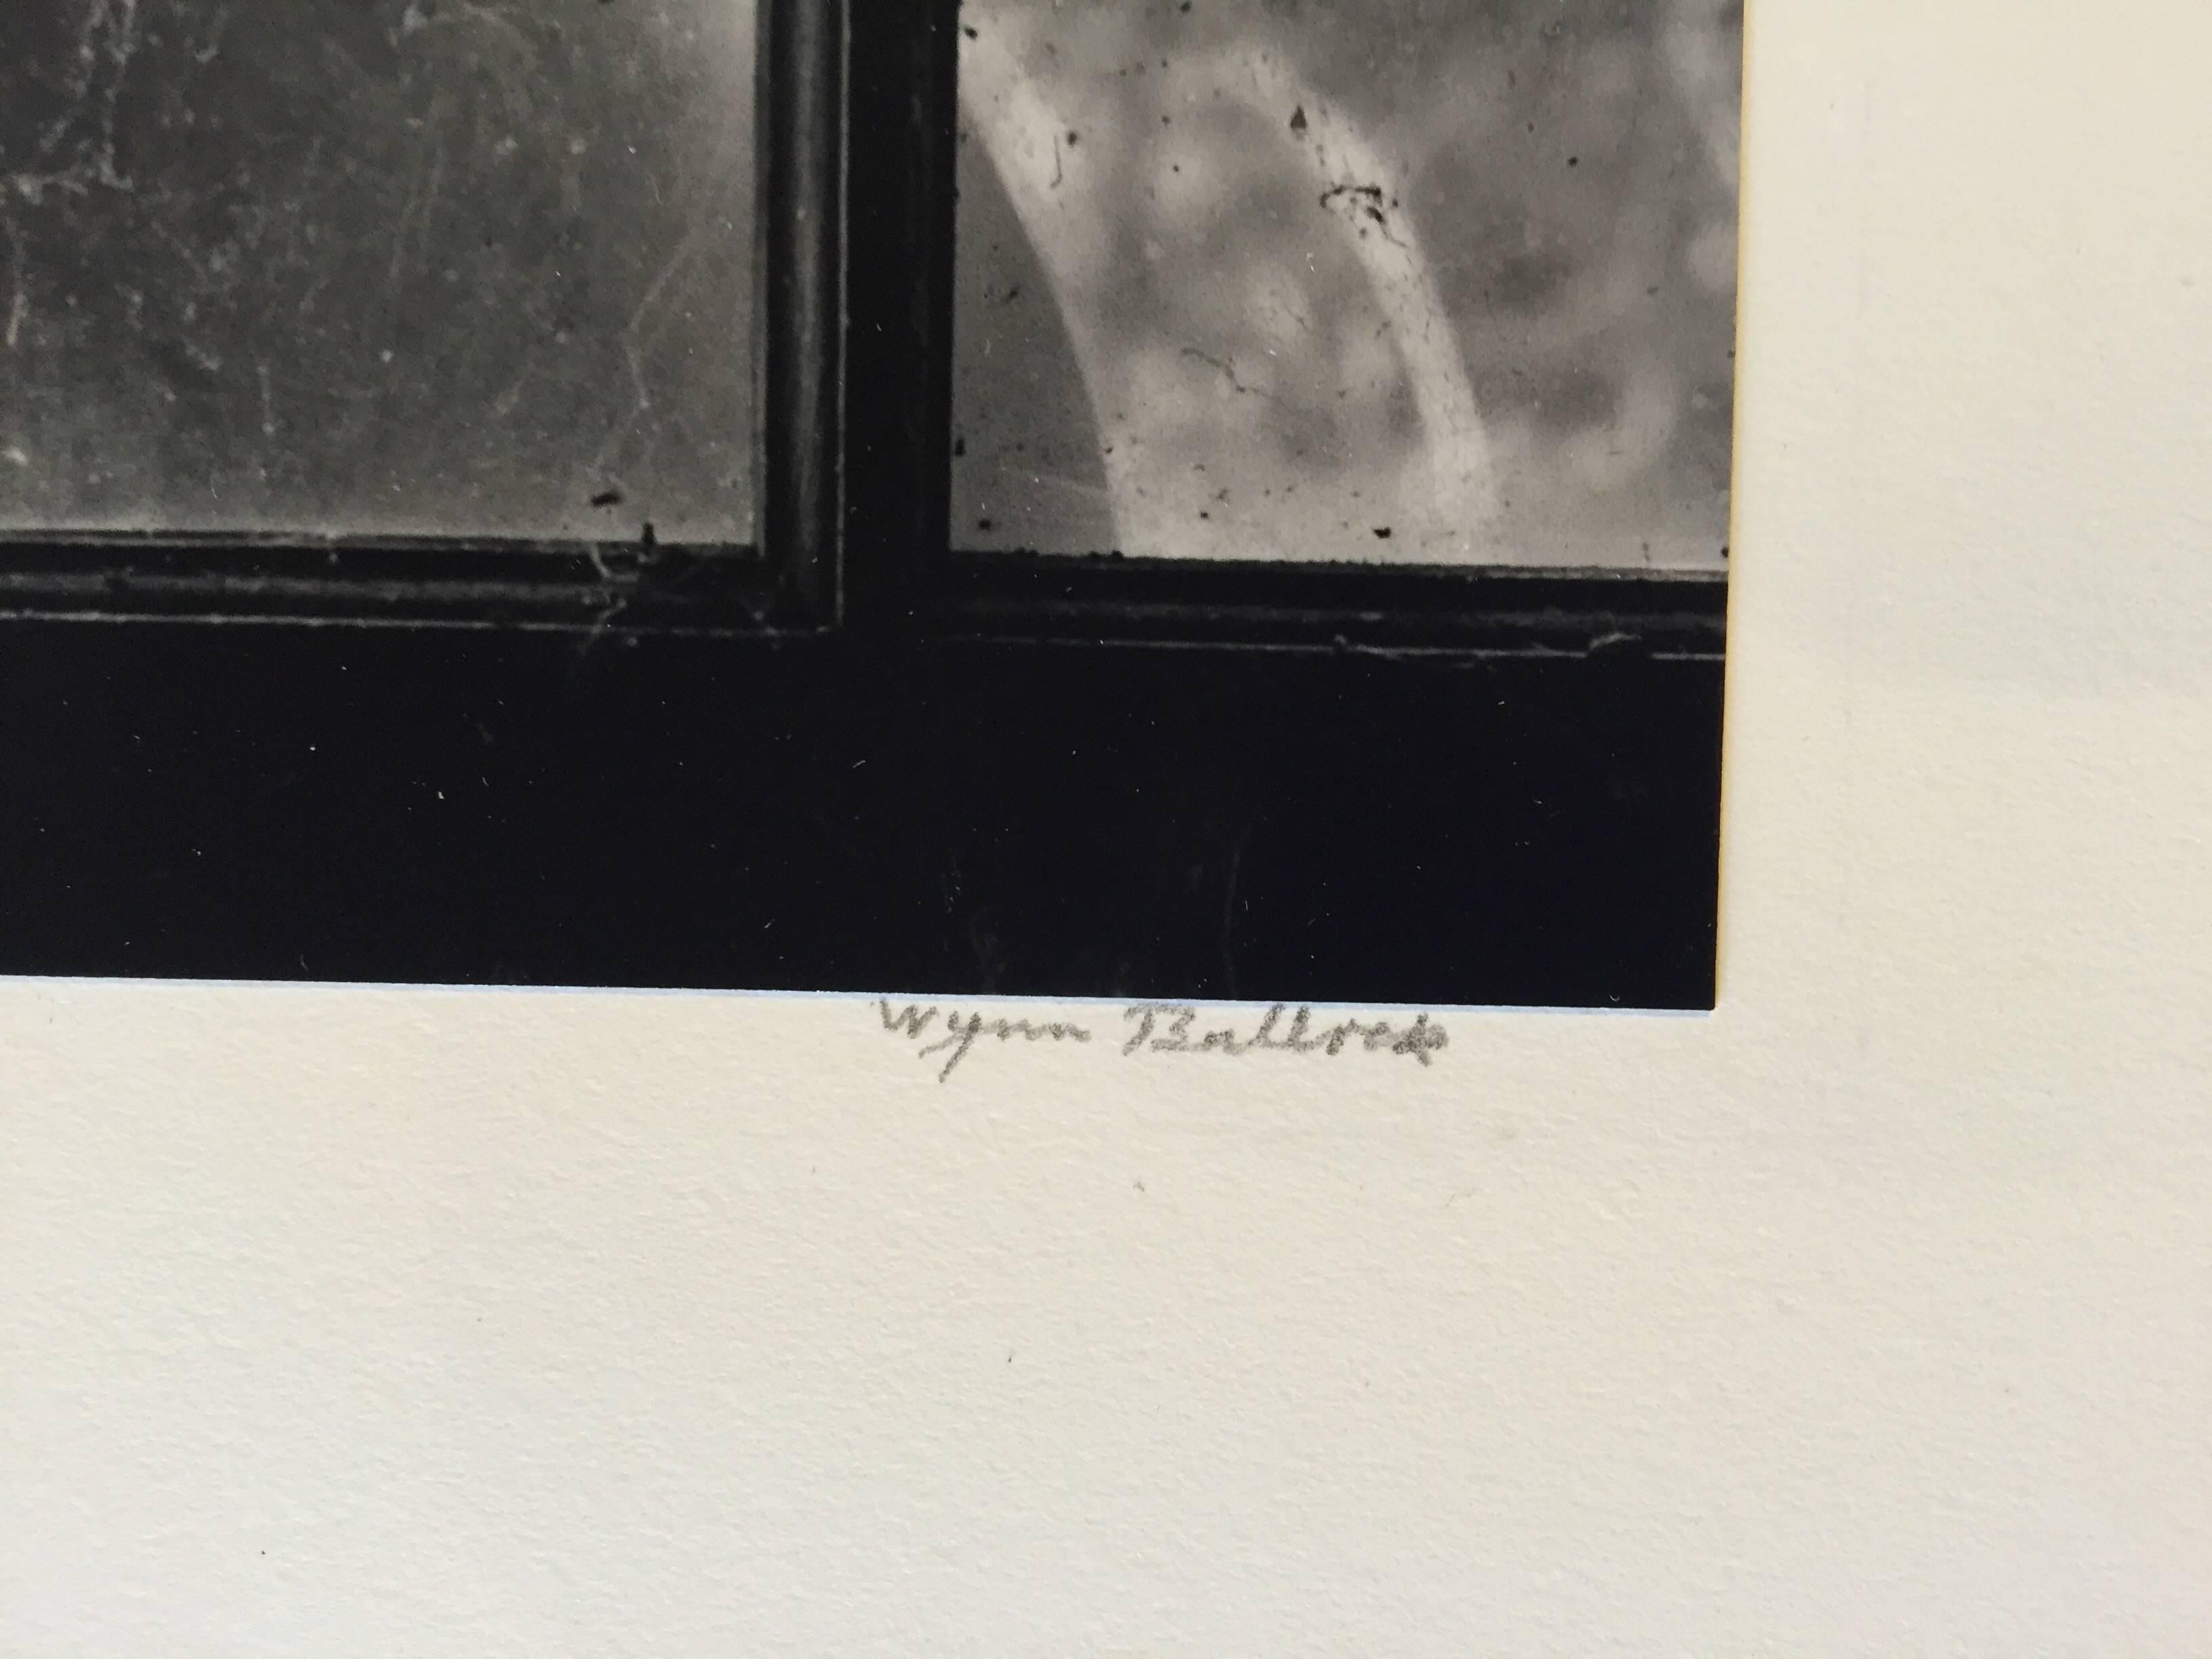 Woman Behind Cobwebbed Window - Photograph by Wynn Bullock